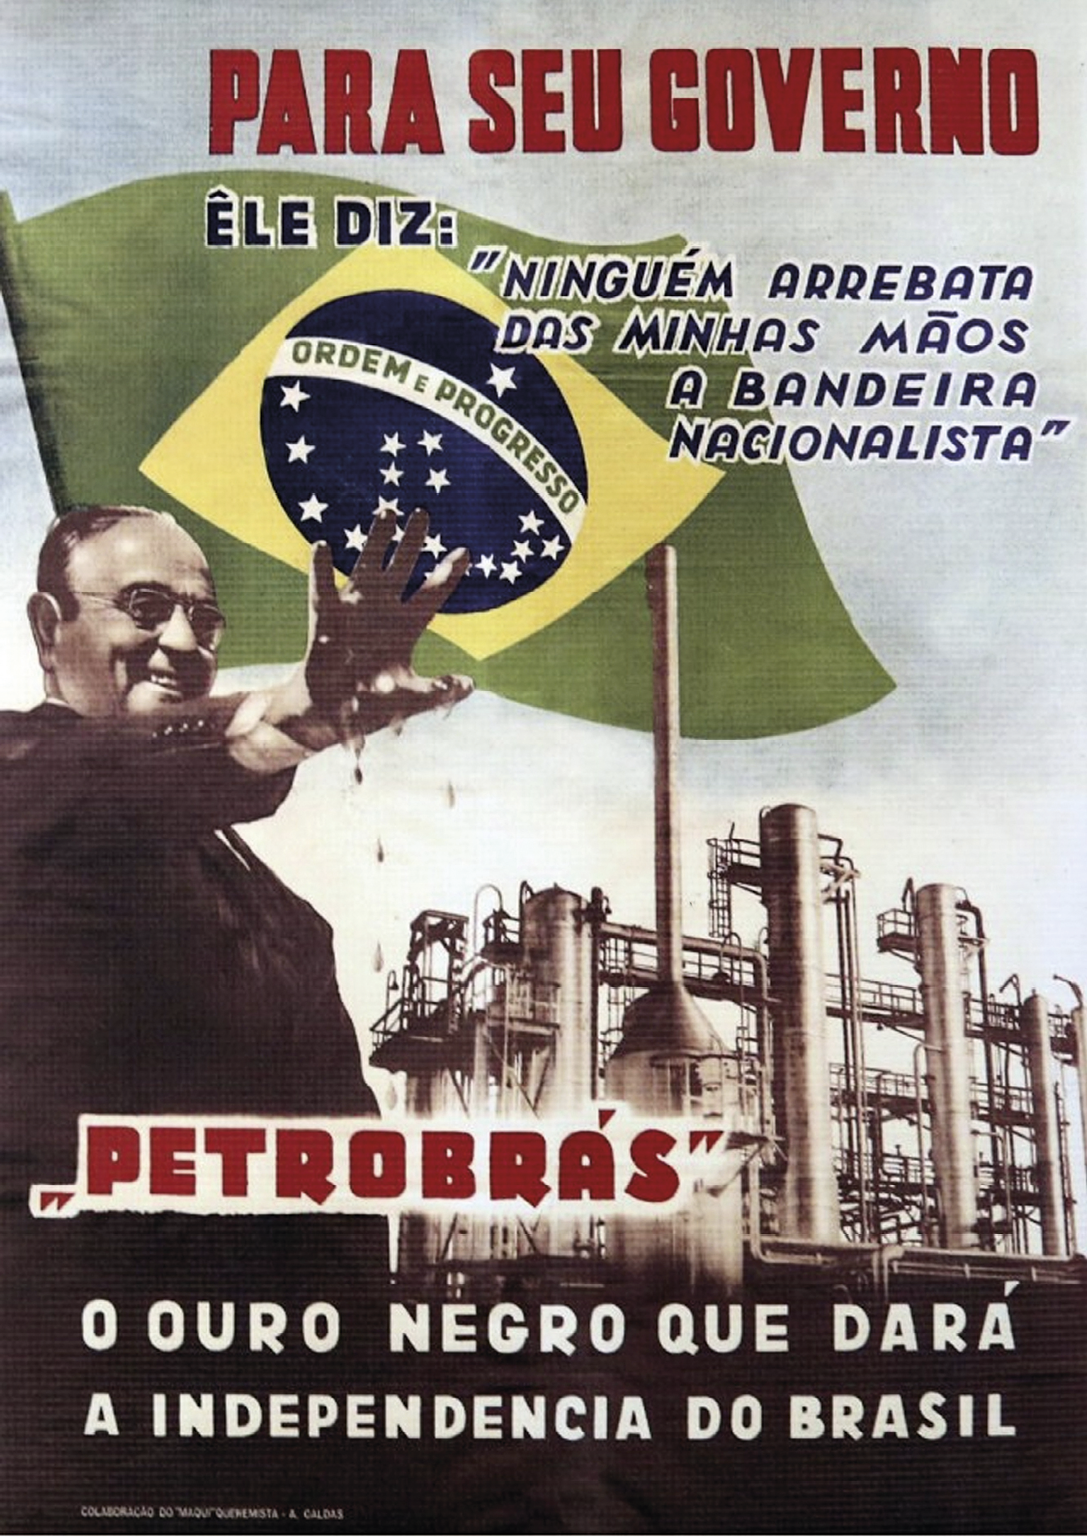 Cartaz. Na parte superior, a inscrição: PARA SEU GOVERNO ÊLE DIZ: “NINGUÉM ARREBATA DAS MINHAS MÃOS A BANDEIRA NACIONALISTA”. Abaixo, à esquerda, fotografia de Getúlio Vargas com uma das mãos erguidas para frente, suja de petróleo. No centro, uma indústria e a bandeira do Brasil ao fundo. Na parte inferior do cartaz, a inscrição: PETROBRÁS. O OURO NEGRO QUE DARÁ A INDEPENDÊNCIA DO BRASIL.